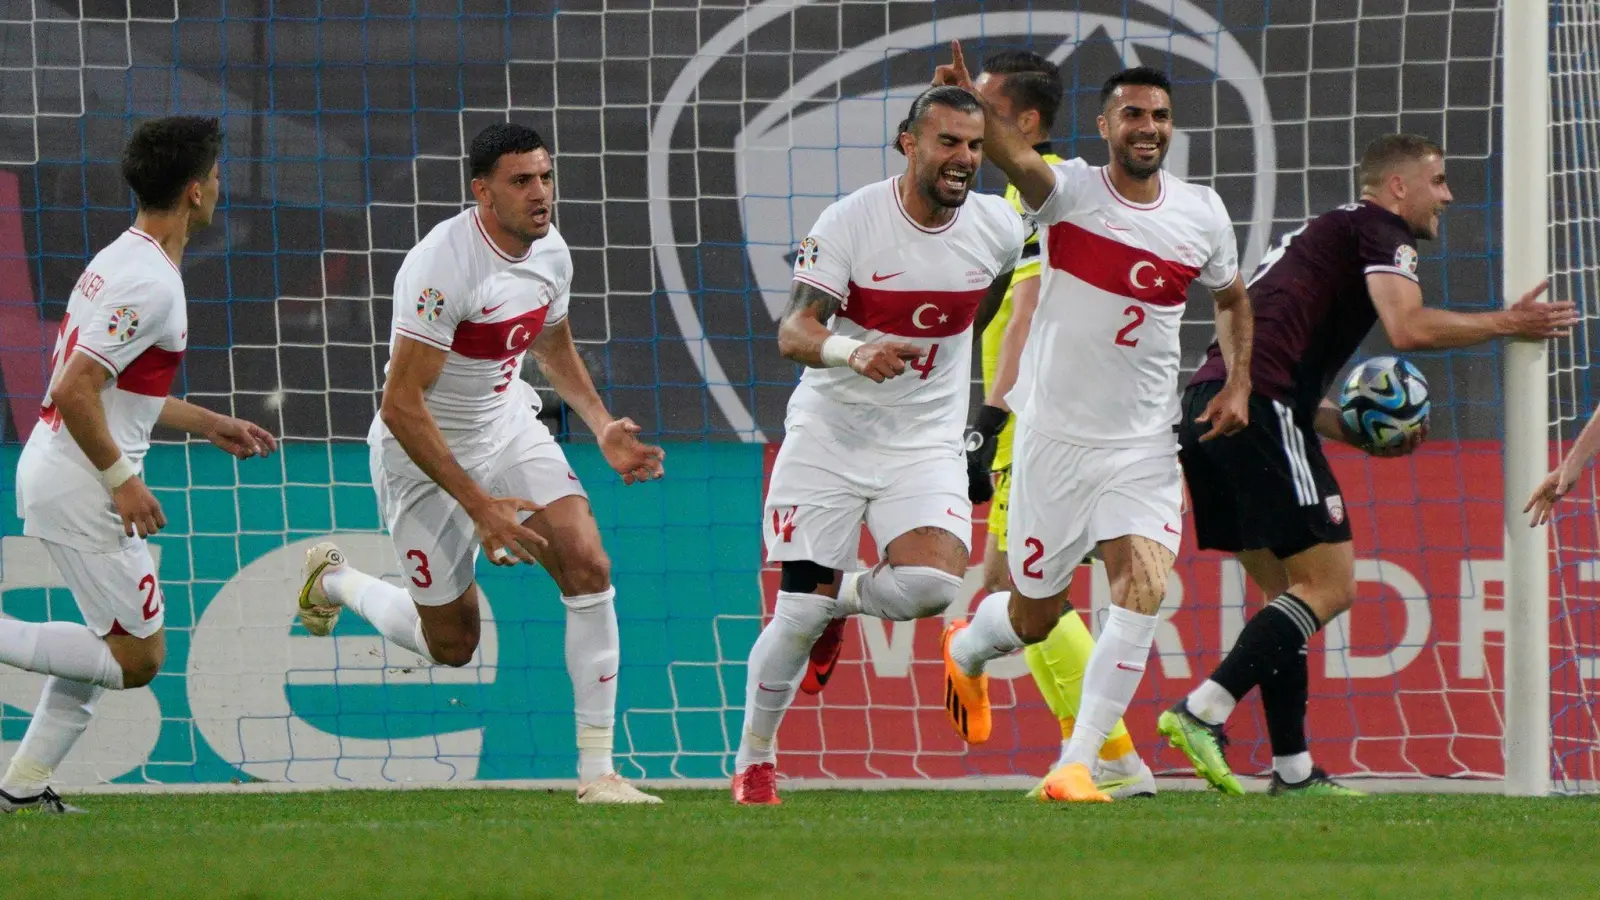 Gegen Lettland gewann die Türkei in Riga in letzter Minute mit 3:2 (1:0). (Foto: Roman Koksarov/AP/dpa)